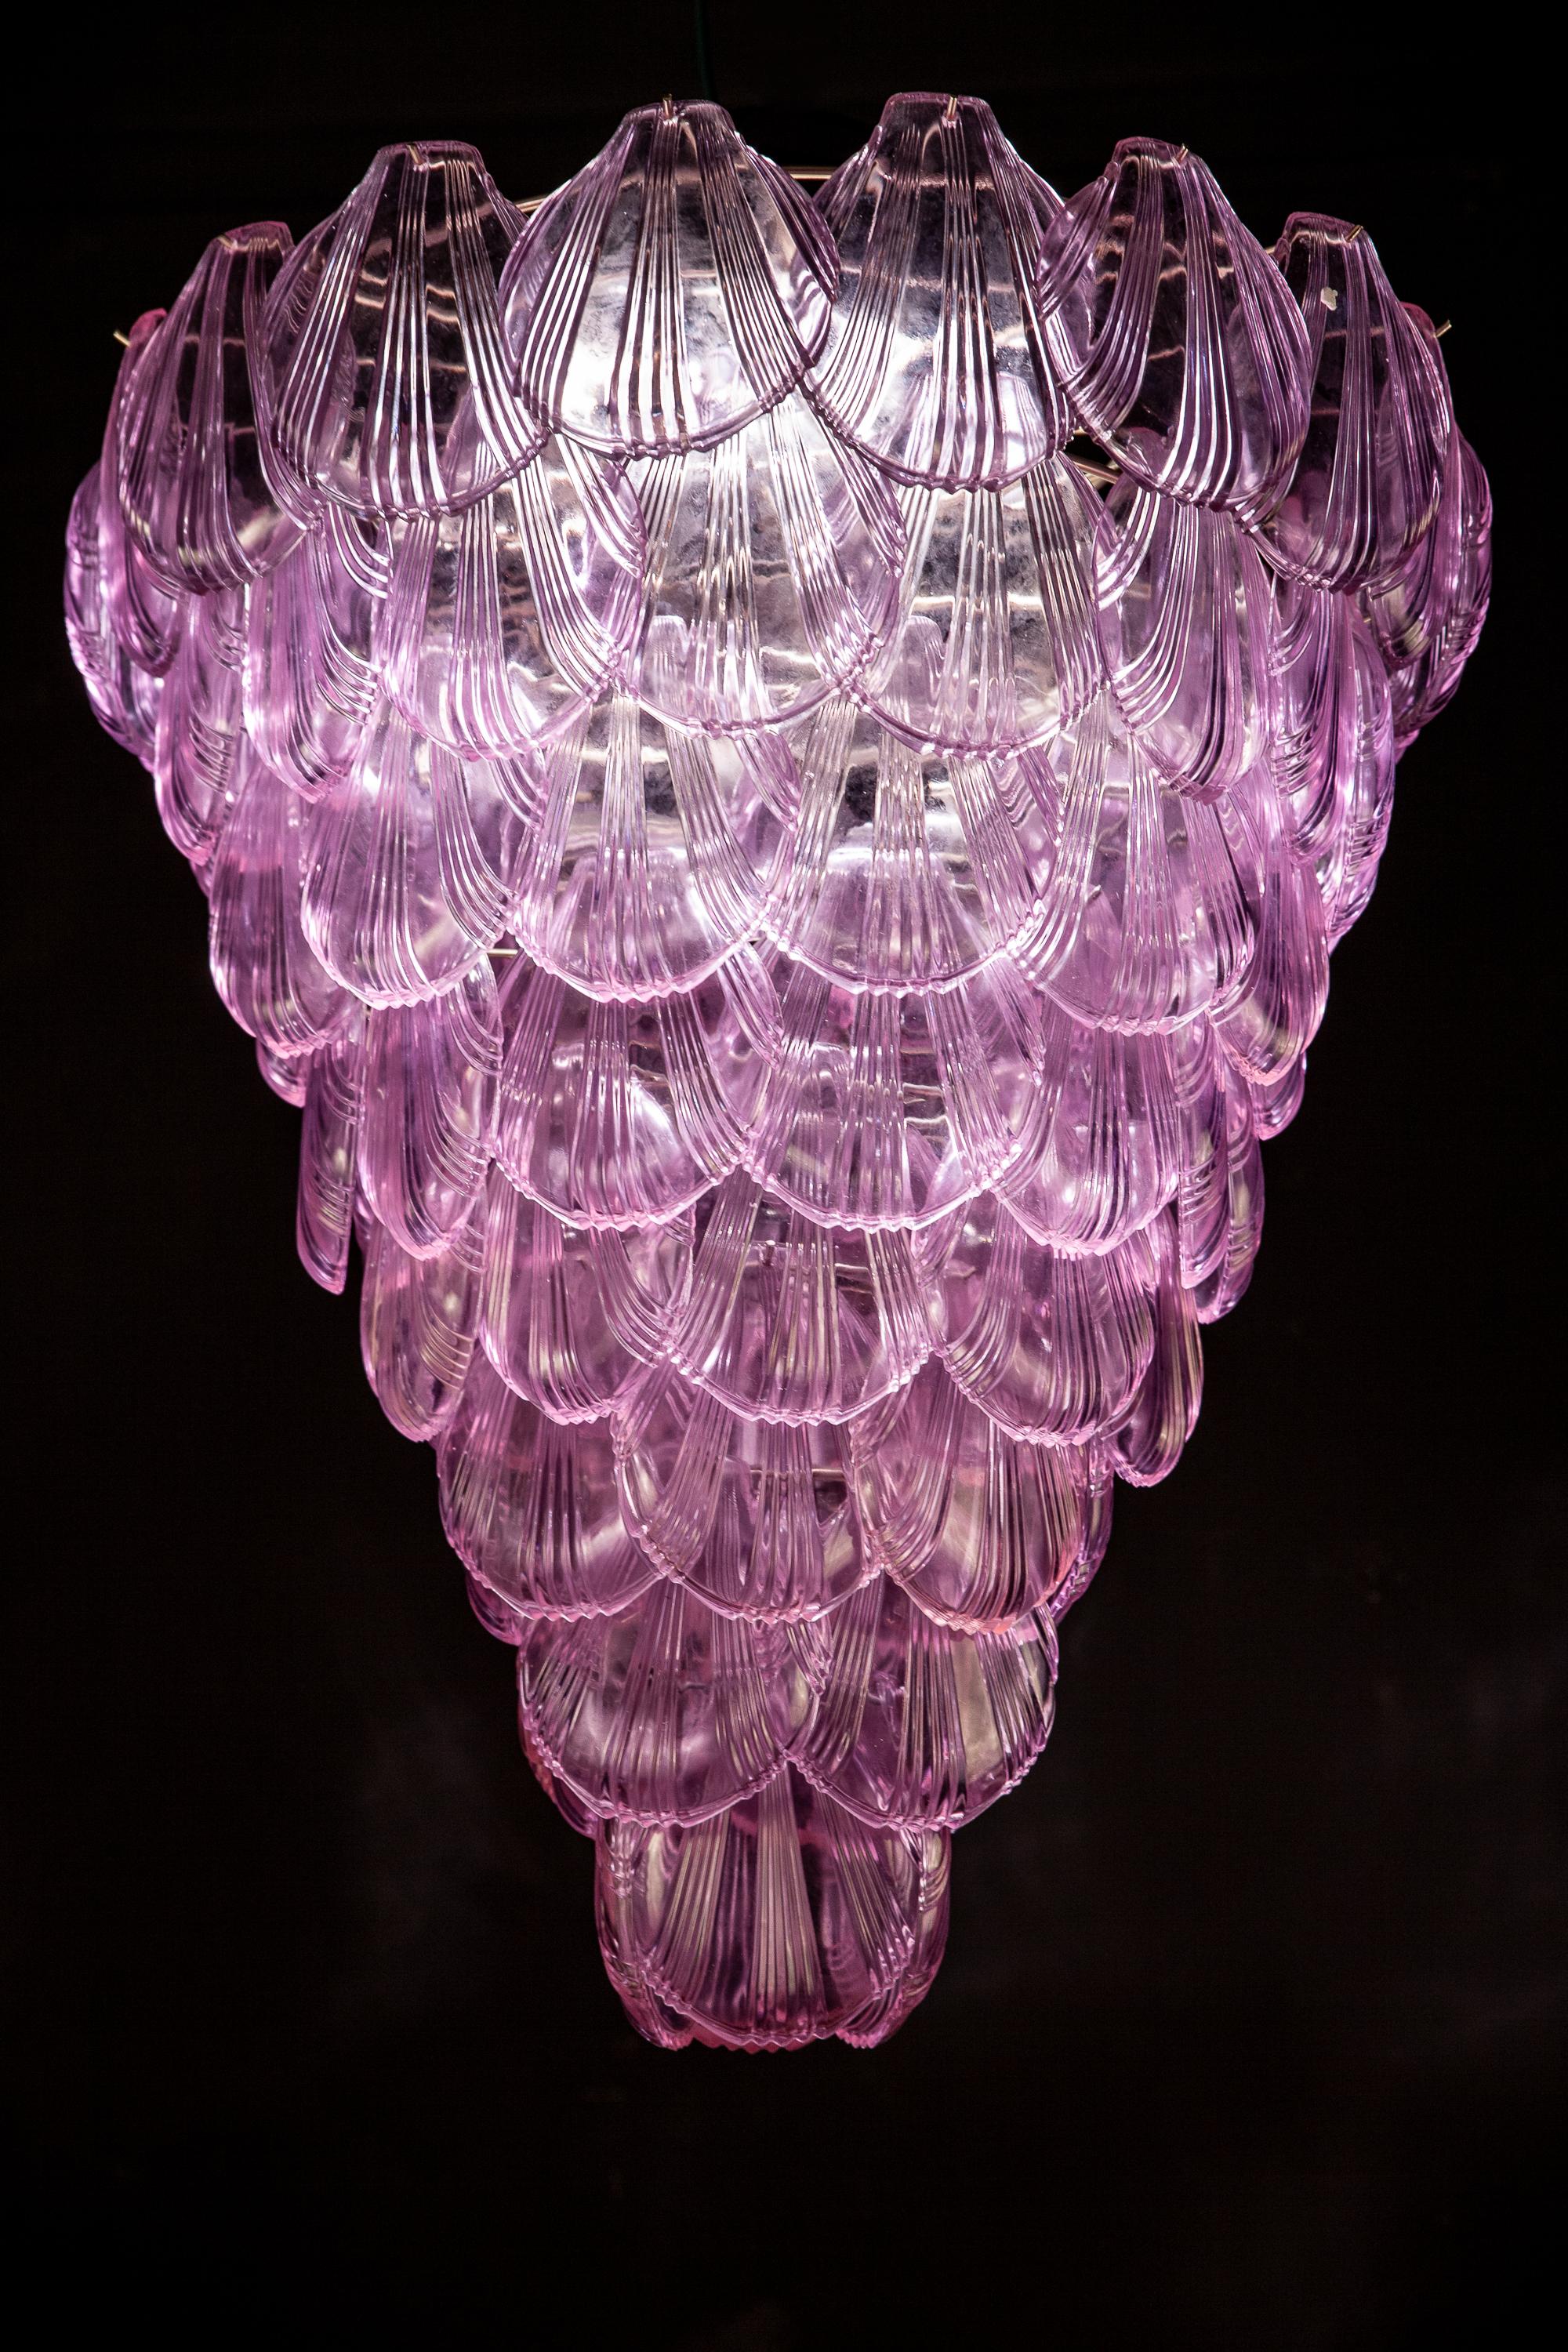 Fabuleux lustre italien en verre de Murano à huit étages avec une cascade de coquillages roses donnant un effet lumineux extraordinaire.
  
 